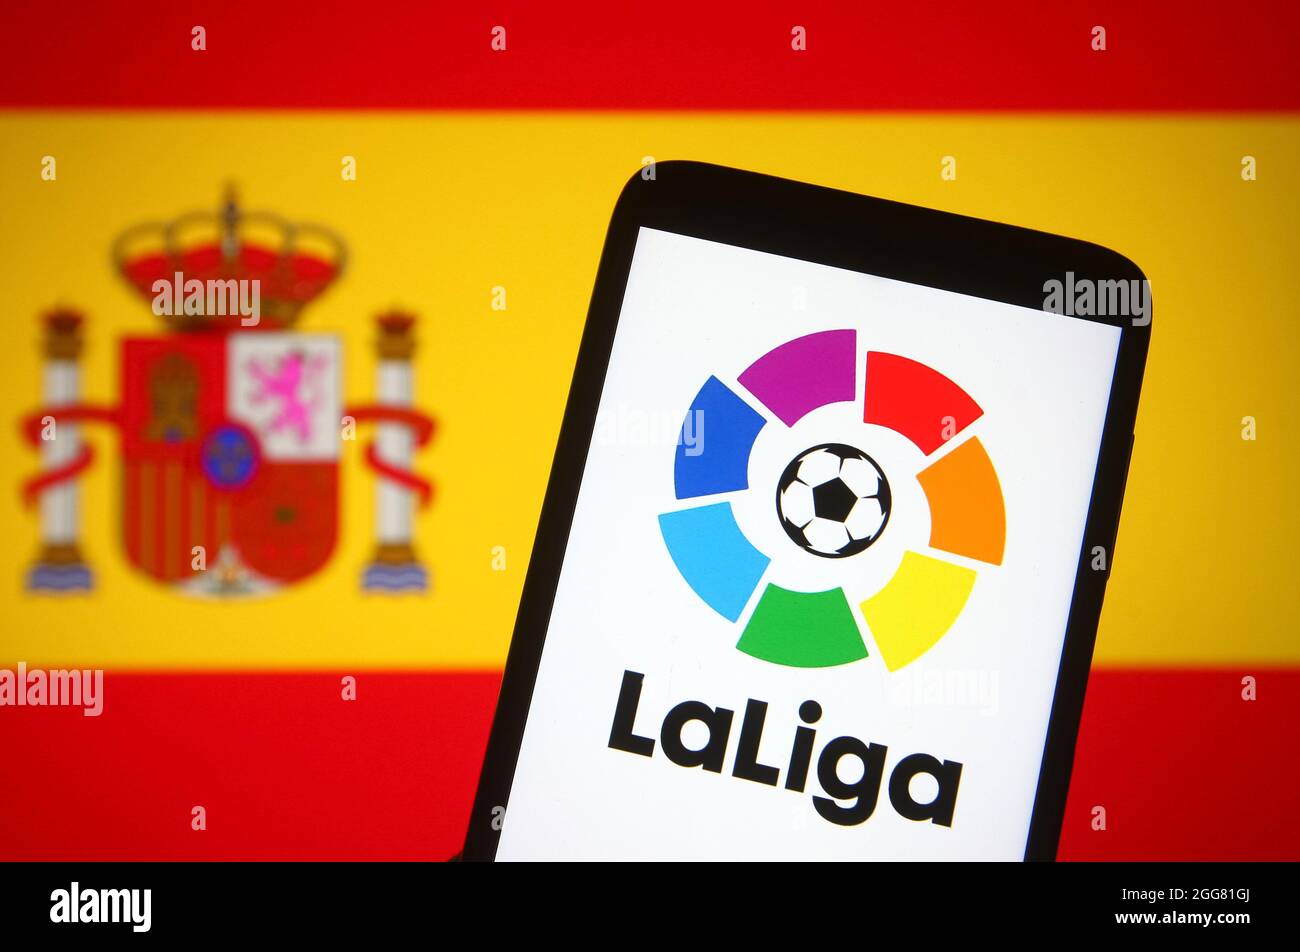 Dans cette illustration, le logo de la Ligue (Campeonato Nacional de Liga  de Primera Division) d'une ligue espagnole de football est visible sur un  écran de smartphone devant le drapeau espagnol en